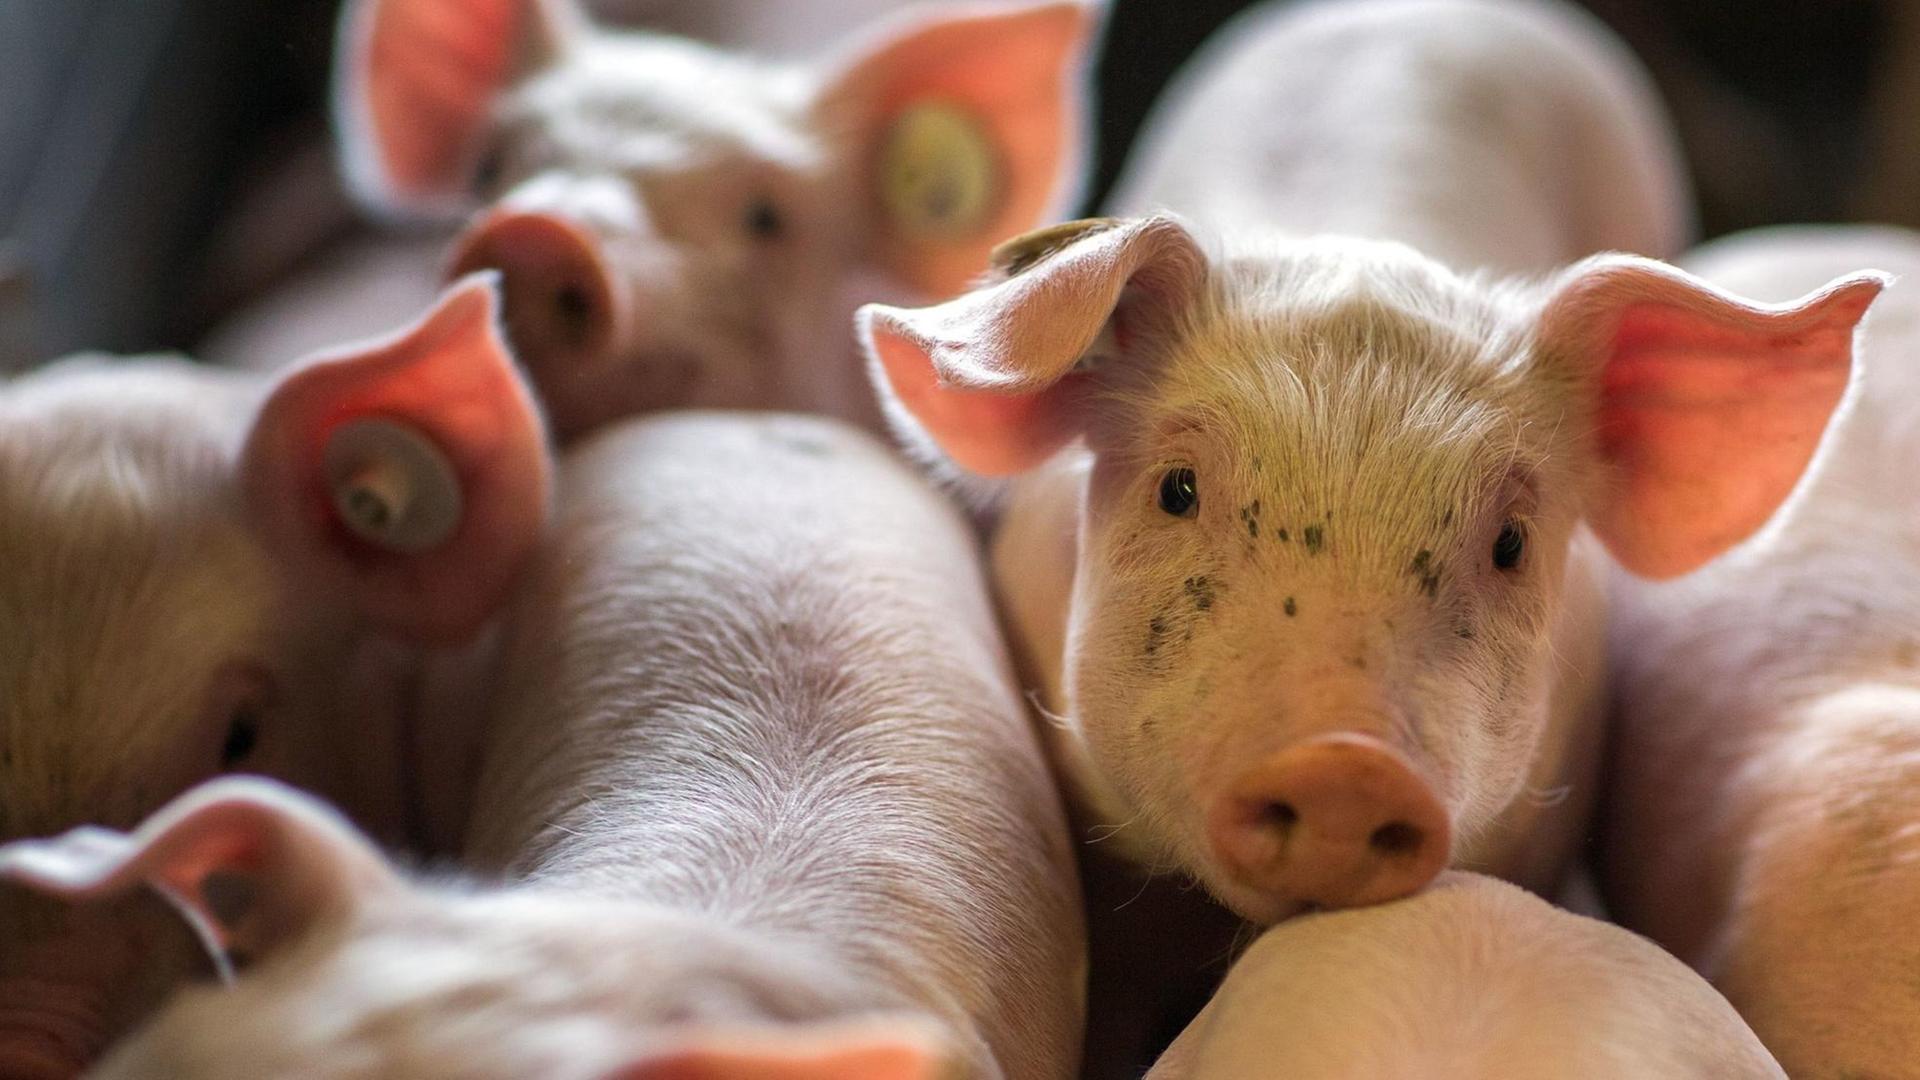 Schweinezuchtbetrieb in Nordwestmecklenburg - wenige Tage alten Ferkel liegen am 21.08.2014 in einer Box in den Abferkelställen der Tierzucht Gut Losten.